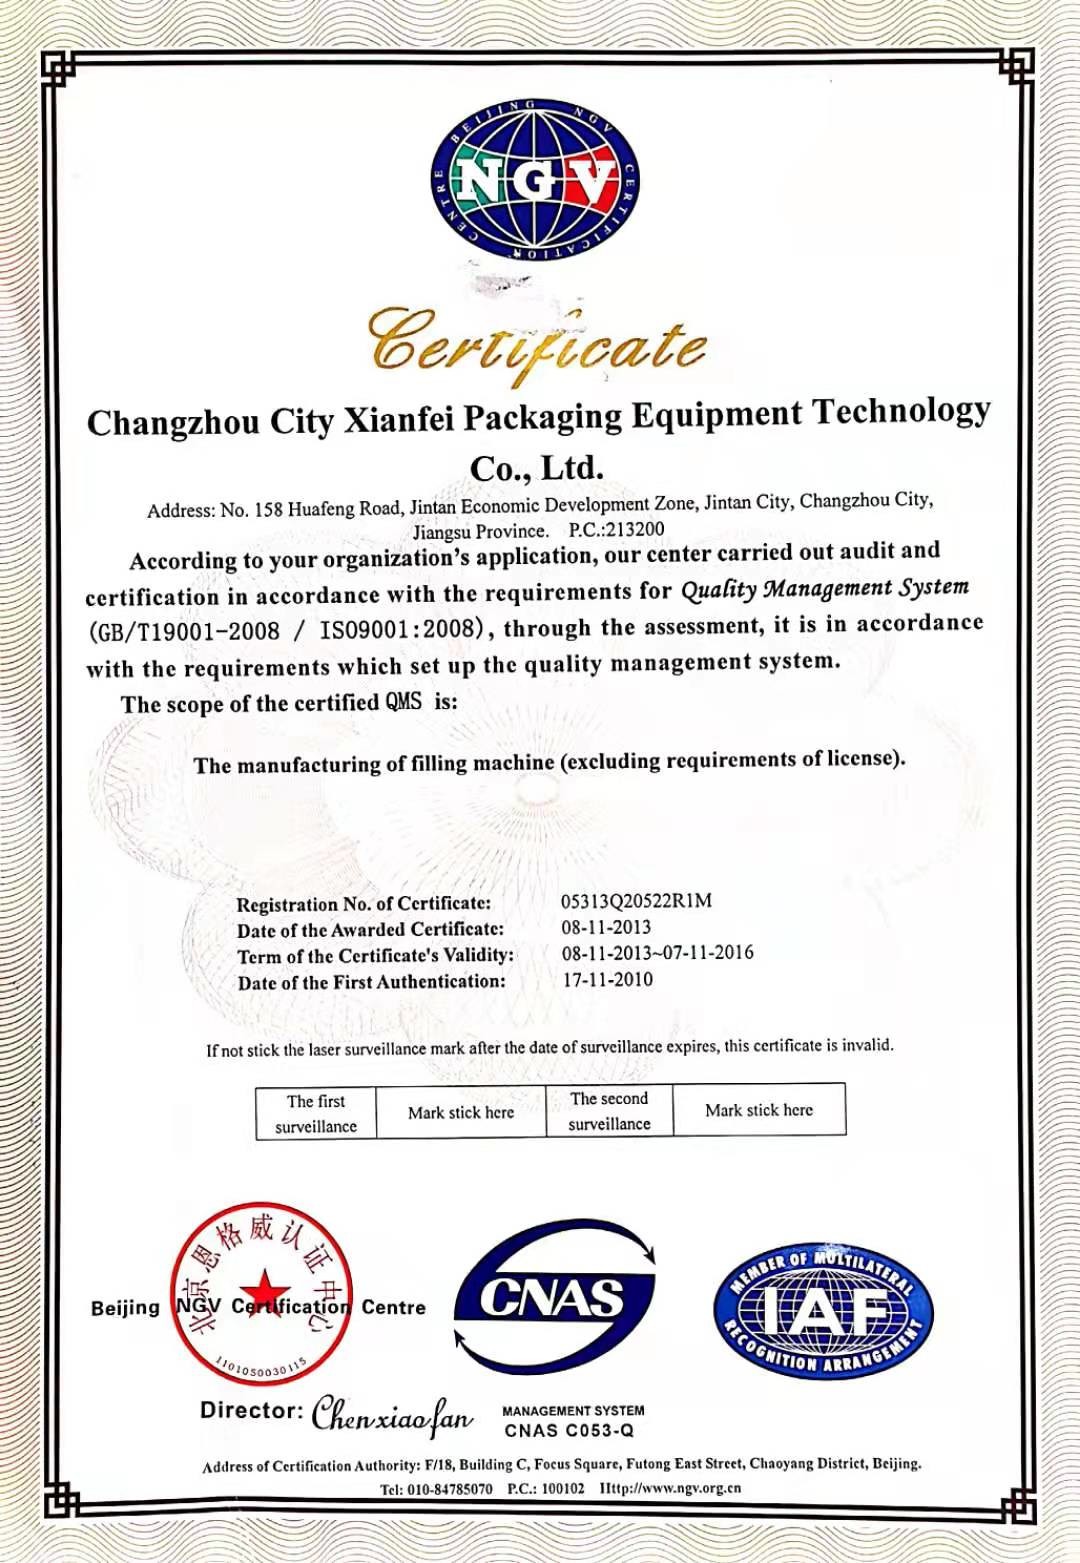 চীন Changzhou Xianfei Packing Equipment Technology Co., Ltd. সার্টিফিকেশন